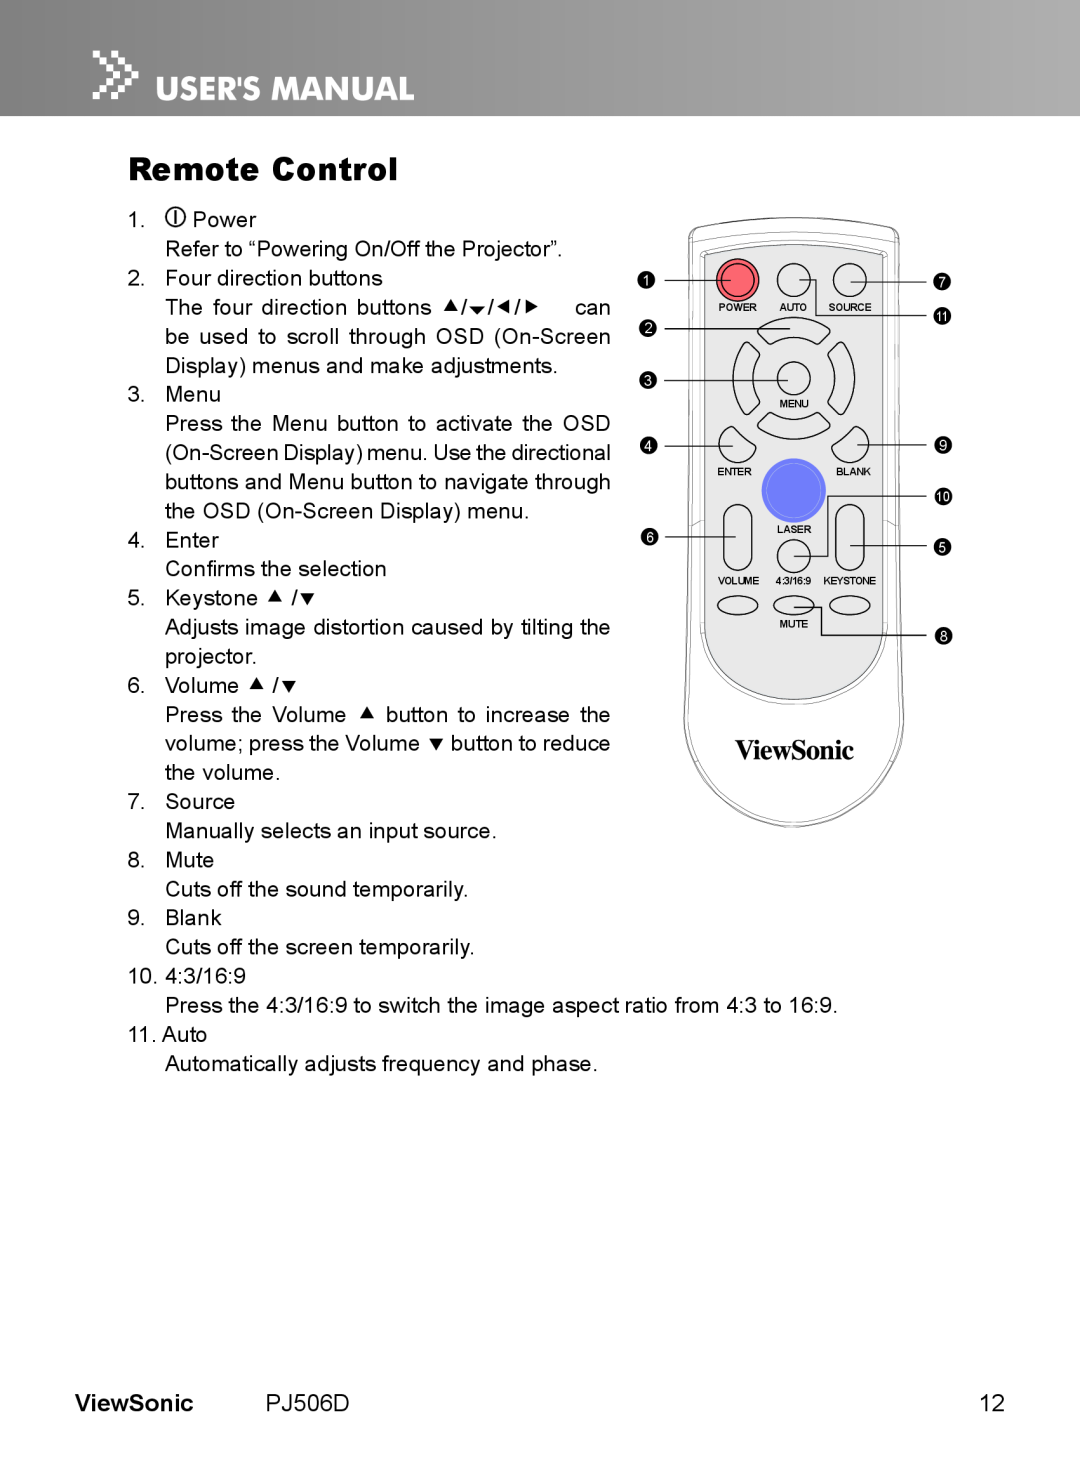 ViewSonic VS11452 manual Remote Control, ViewSonic, PJ506D 